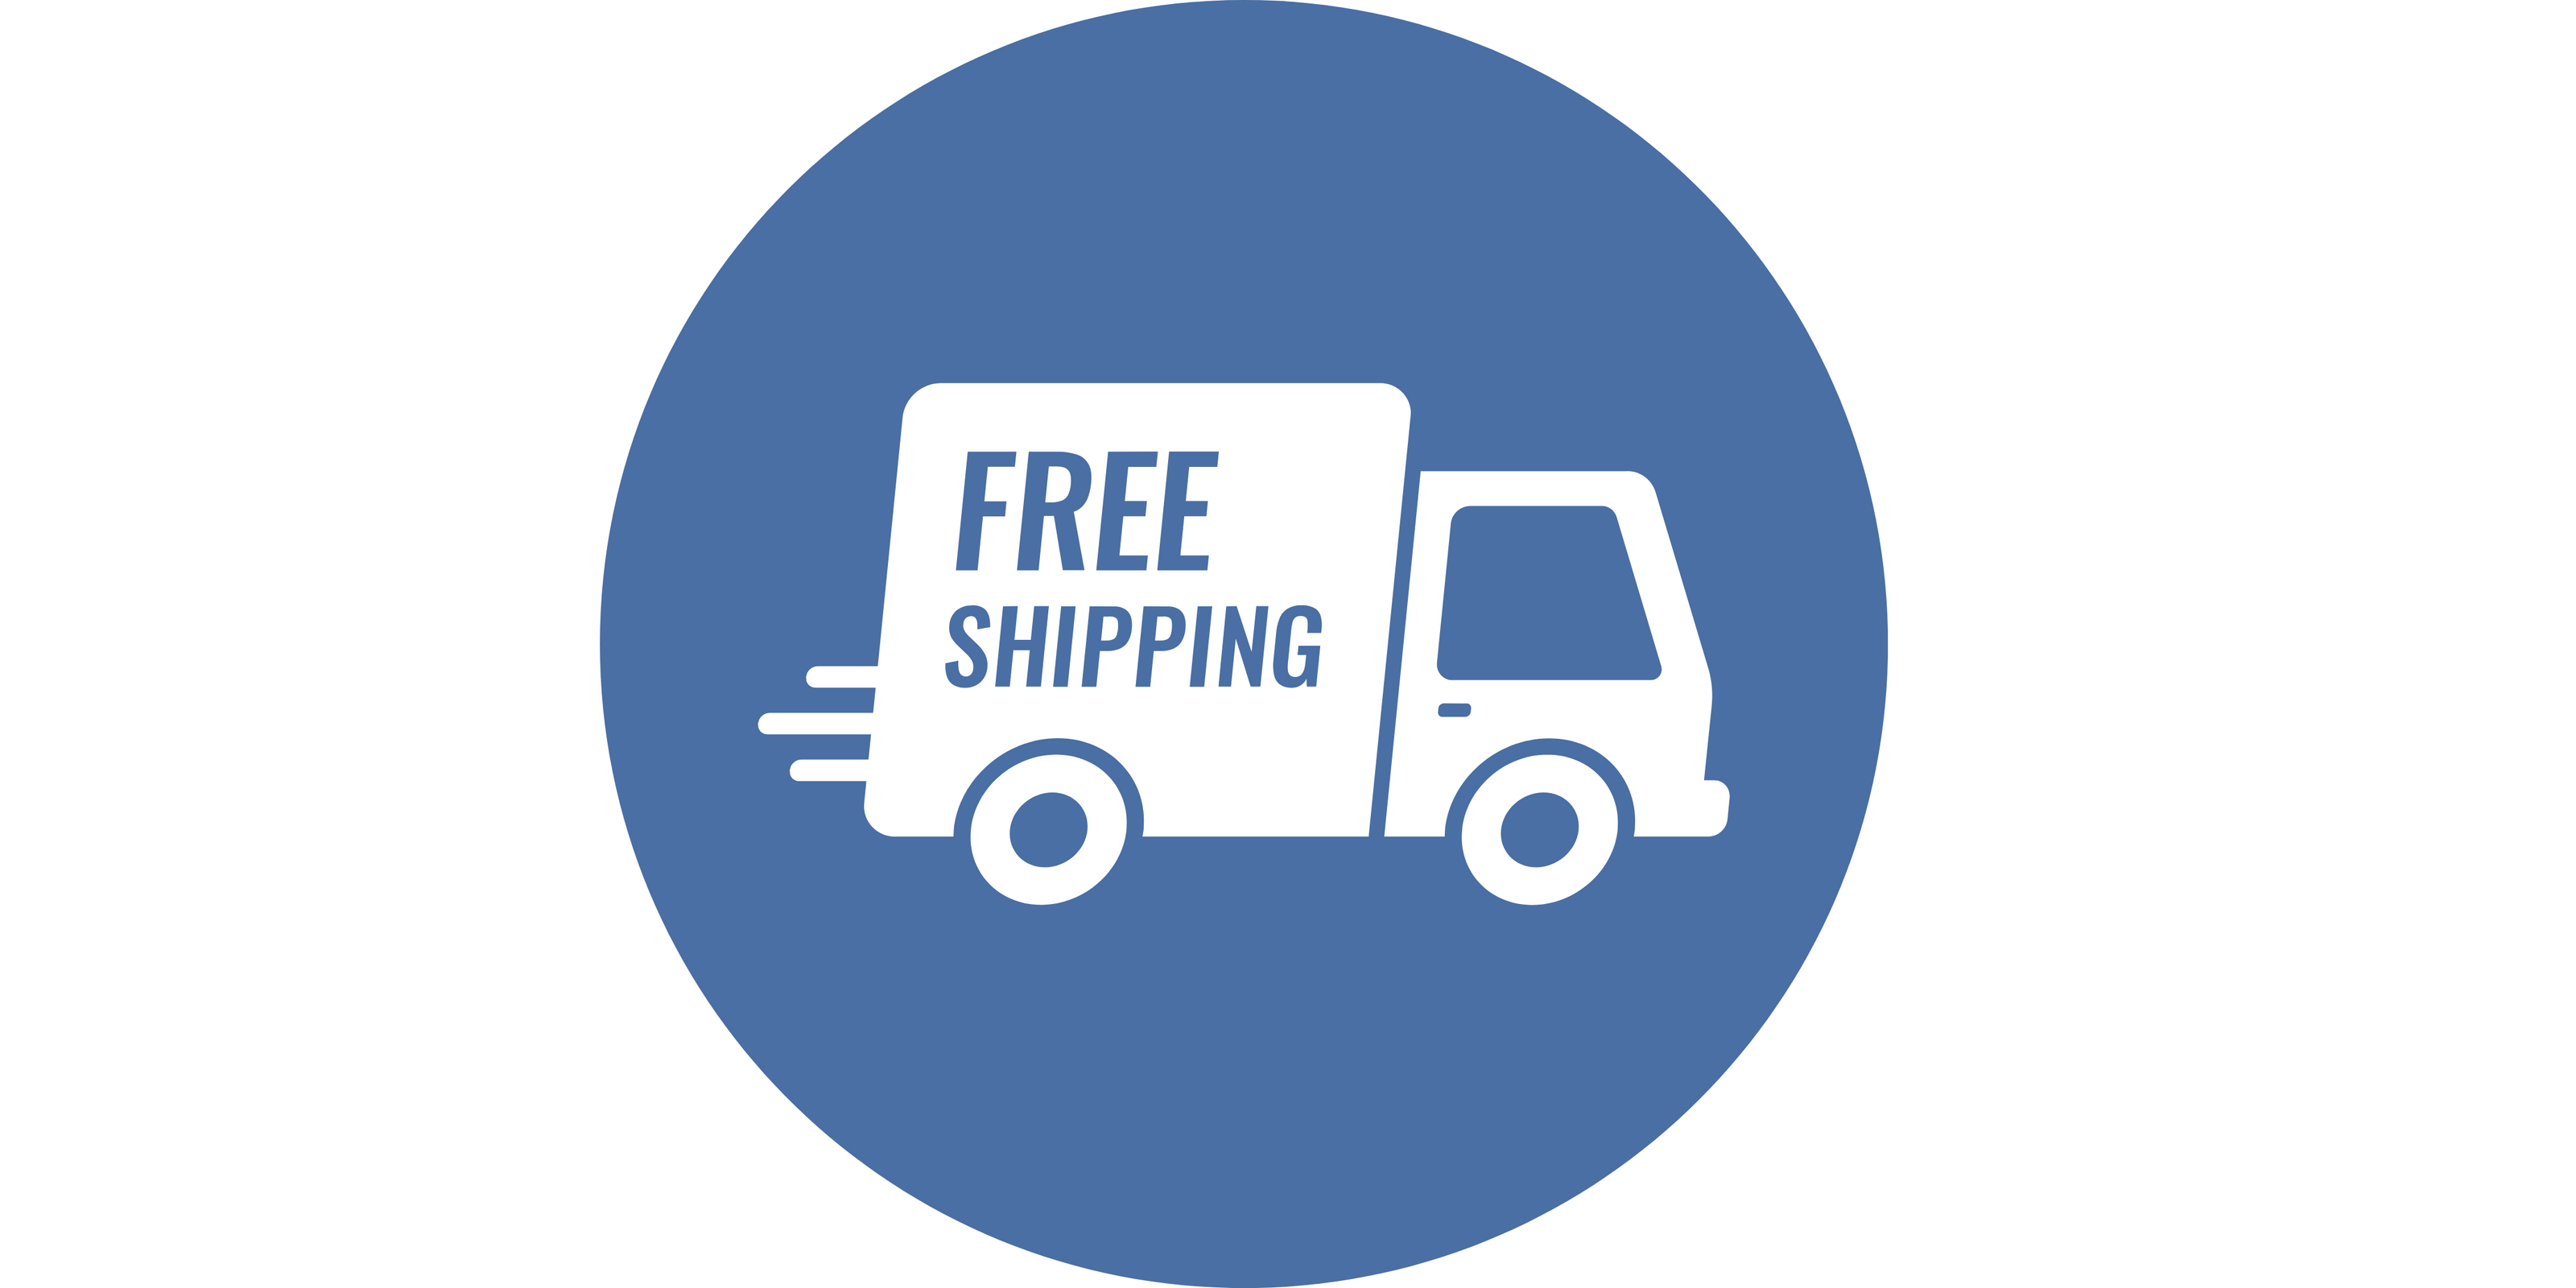 PNG sous forme d'icone d'un camion avec le signe "FREE SHIPPING" indiquant la livraison gratuite